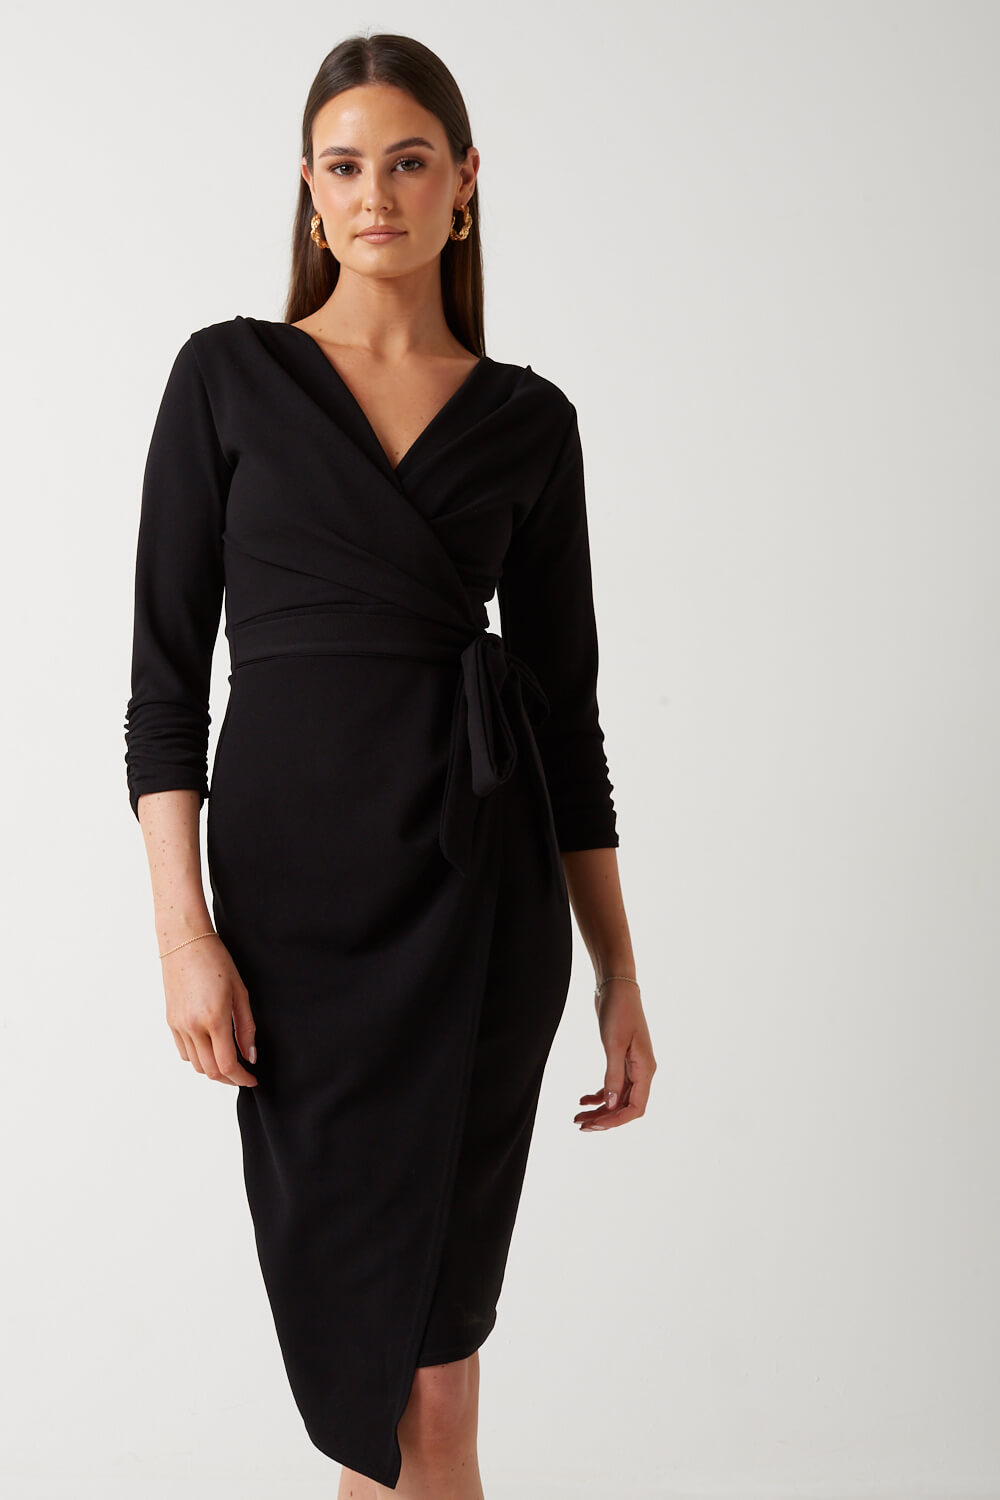 Pixie Daisy Giana Midi Dress in Black | iCLOTHING - iCLOTHING